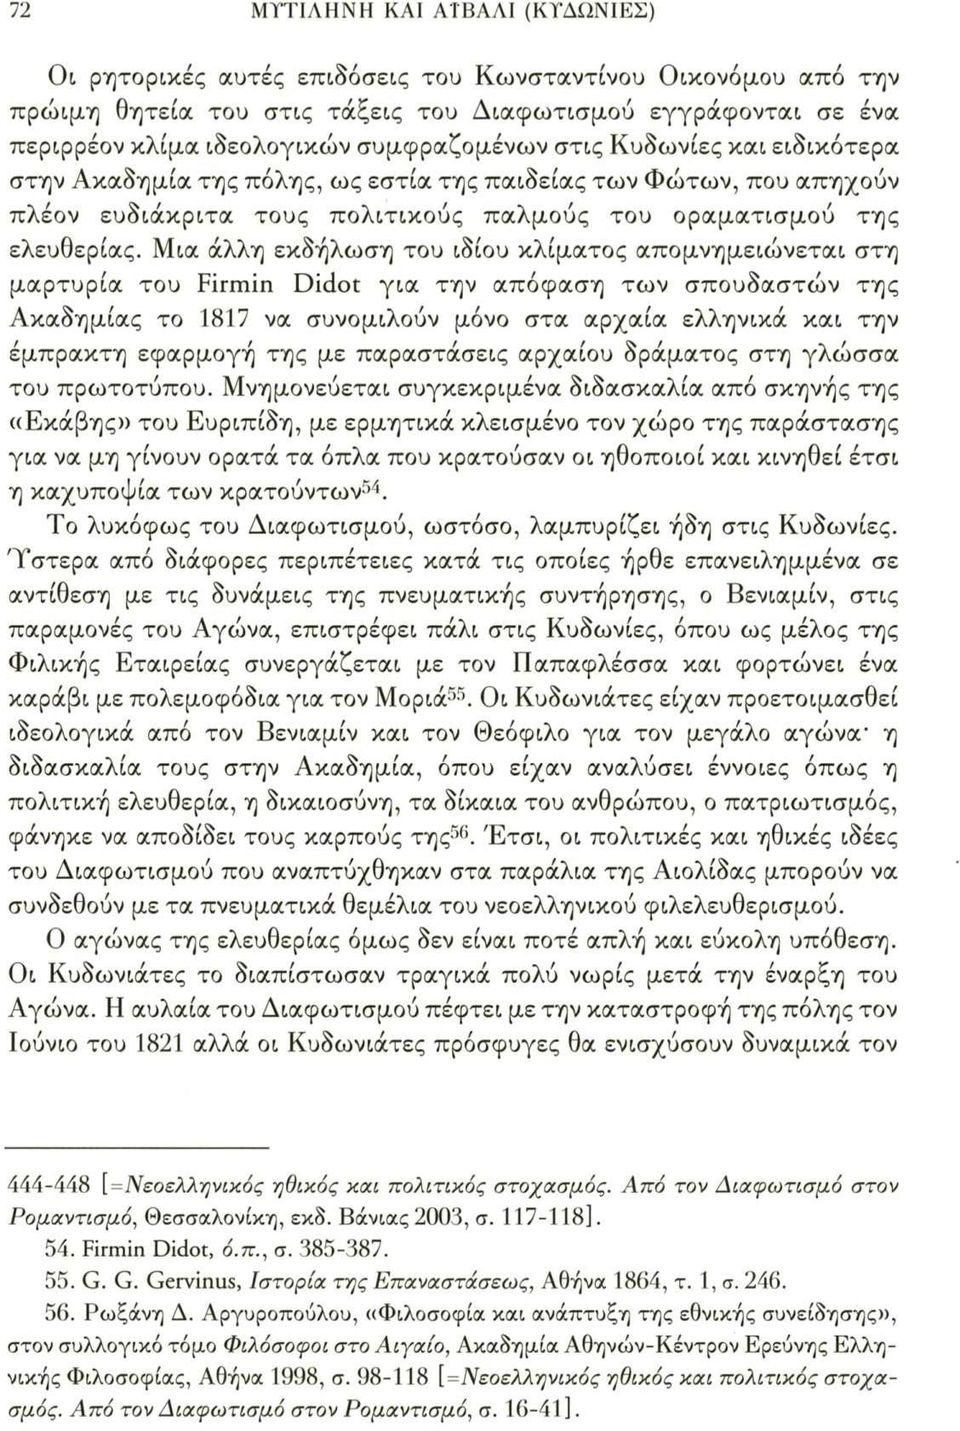 Μια άλλη εκδήλωση του ιδίου κλίματος απομνημειώνεται στη μαρτυρία του Firmin Didot για την απόφαση των σπουδαστών της Ακαδημίας το 1817 να συνομιλούν μόνο στα αρχαία ελληνικά και την έμπρακτη